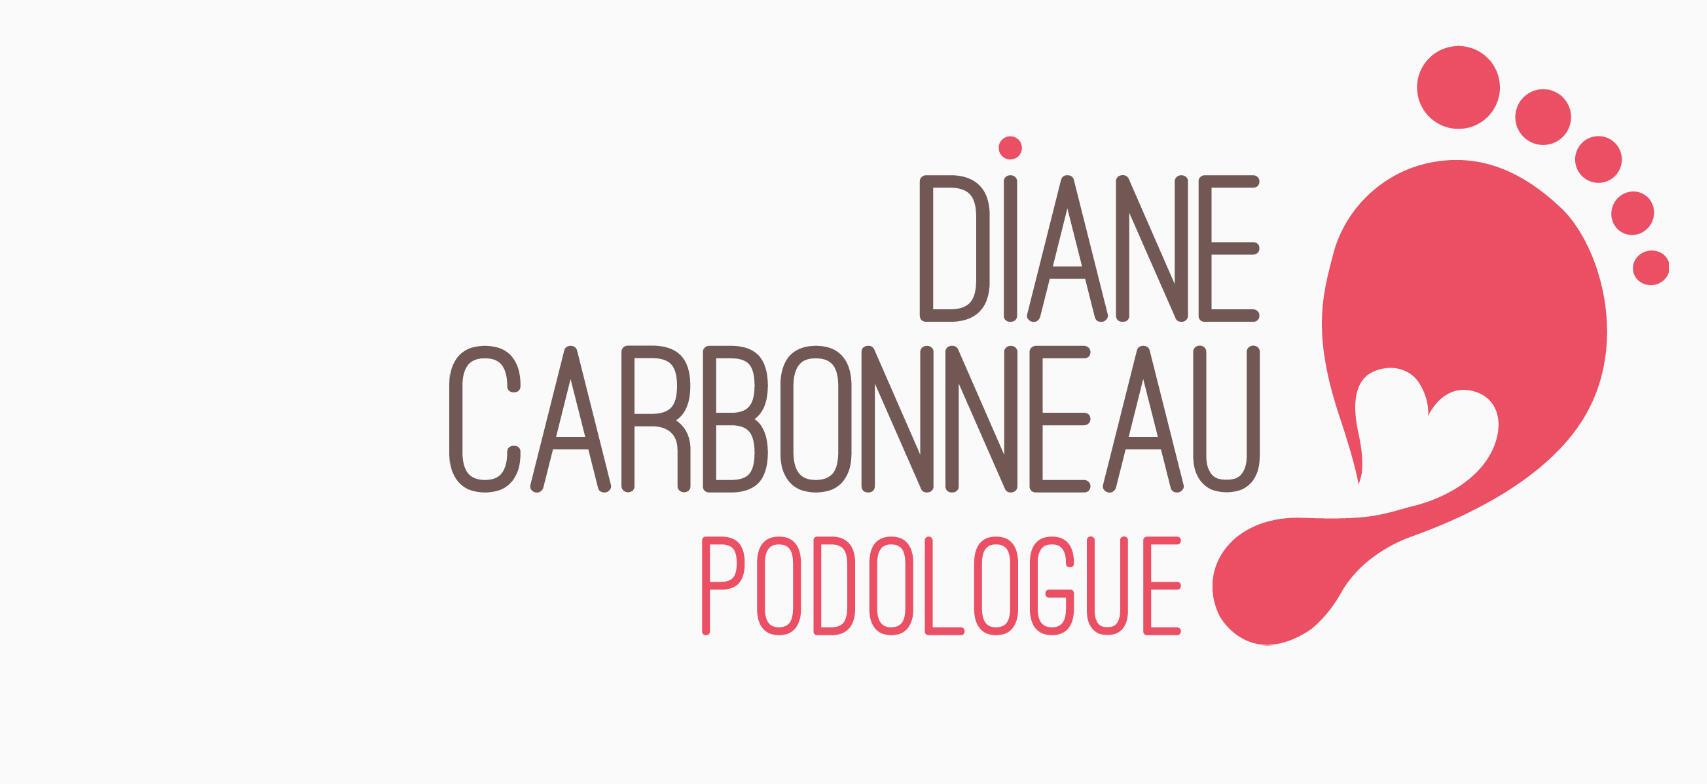 Diane Carbonneau podologue